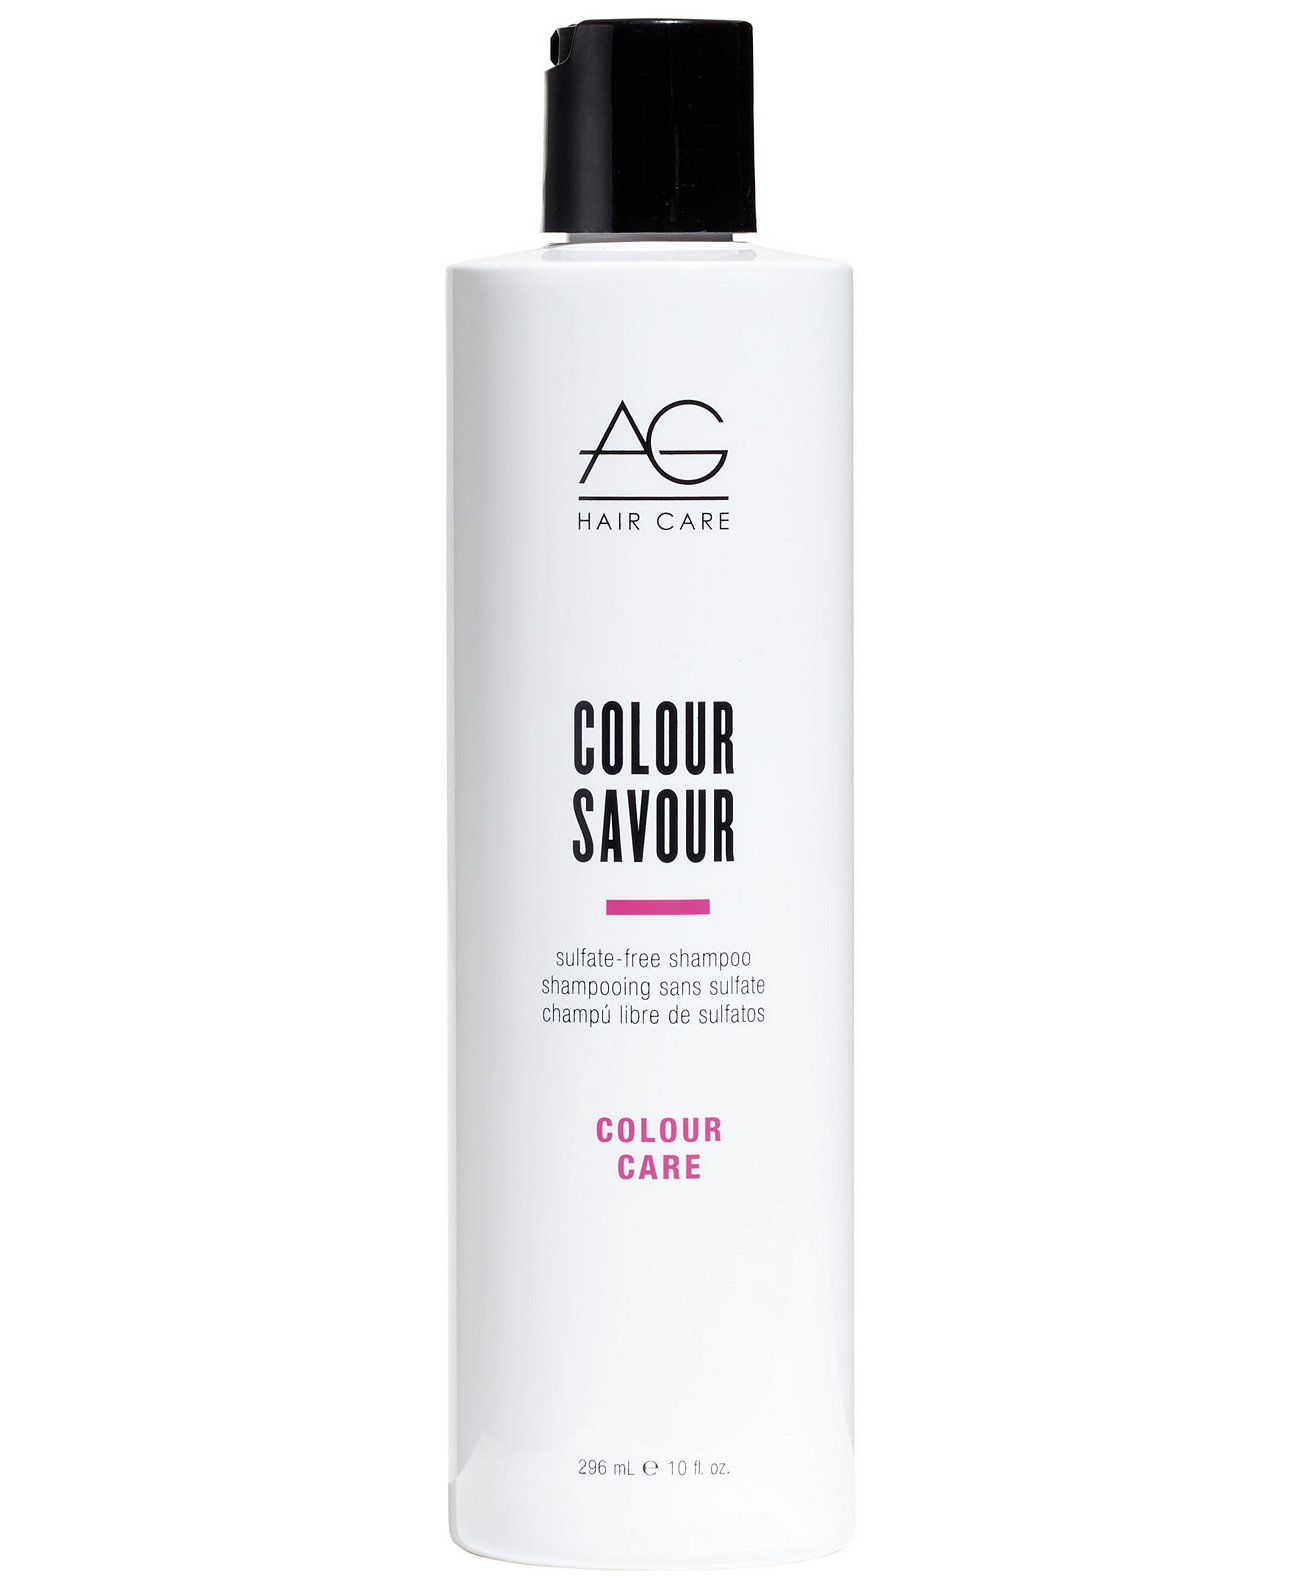 Color Care Цветной шампунь Savor, 10 унций, от PUREBEAUTY Salon & Spa AG Hair